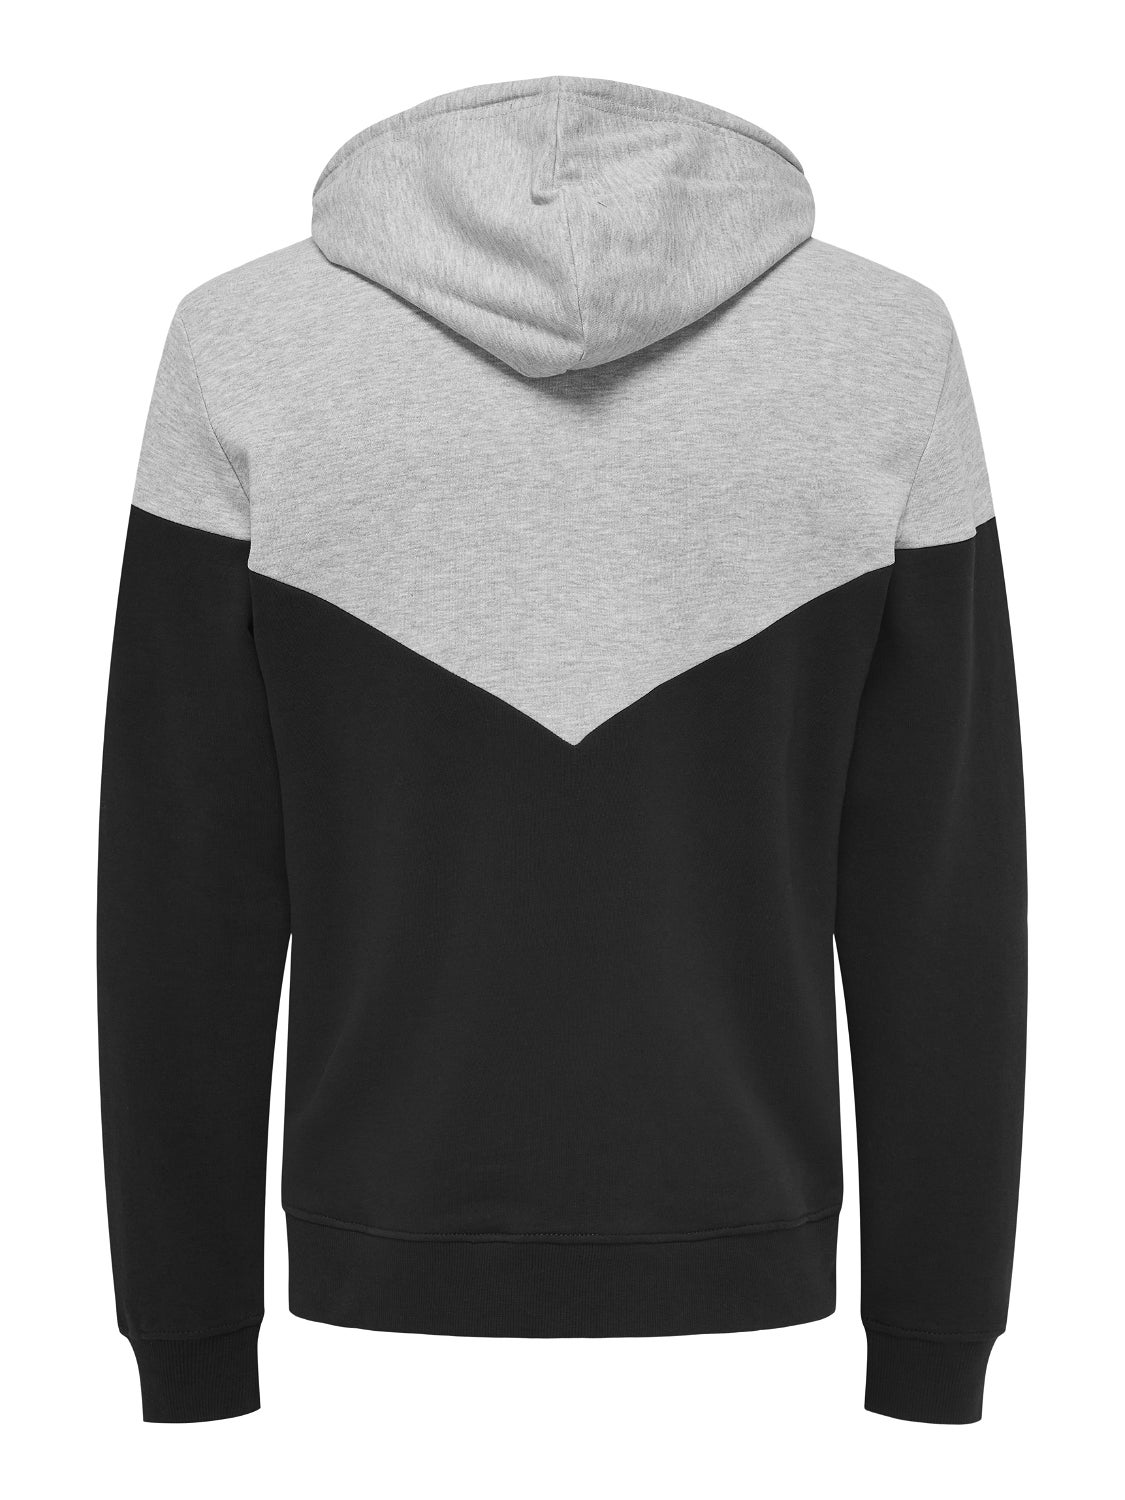 Grün L ONLY & SONS Pullover Rabatt 56 % HERREN Pullovers & Sweatshirts Basisch 